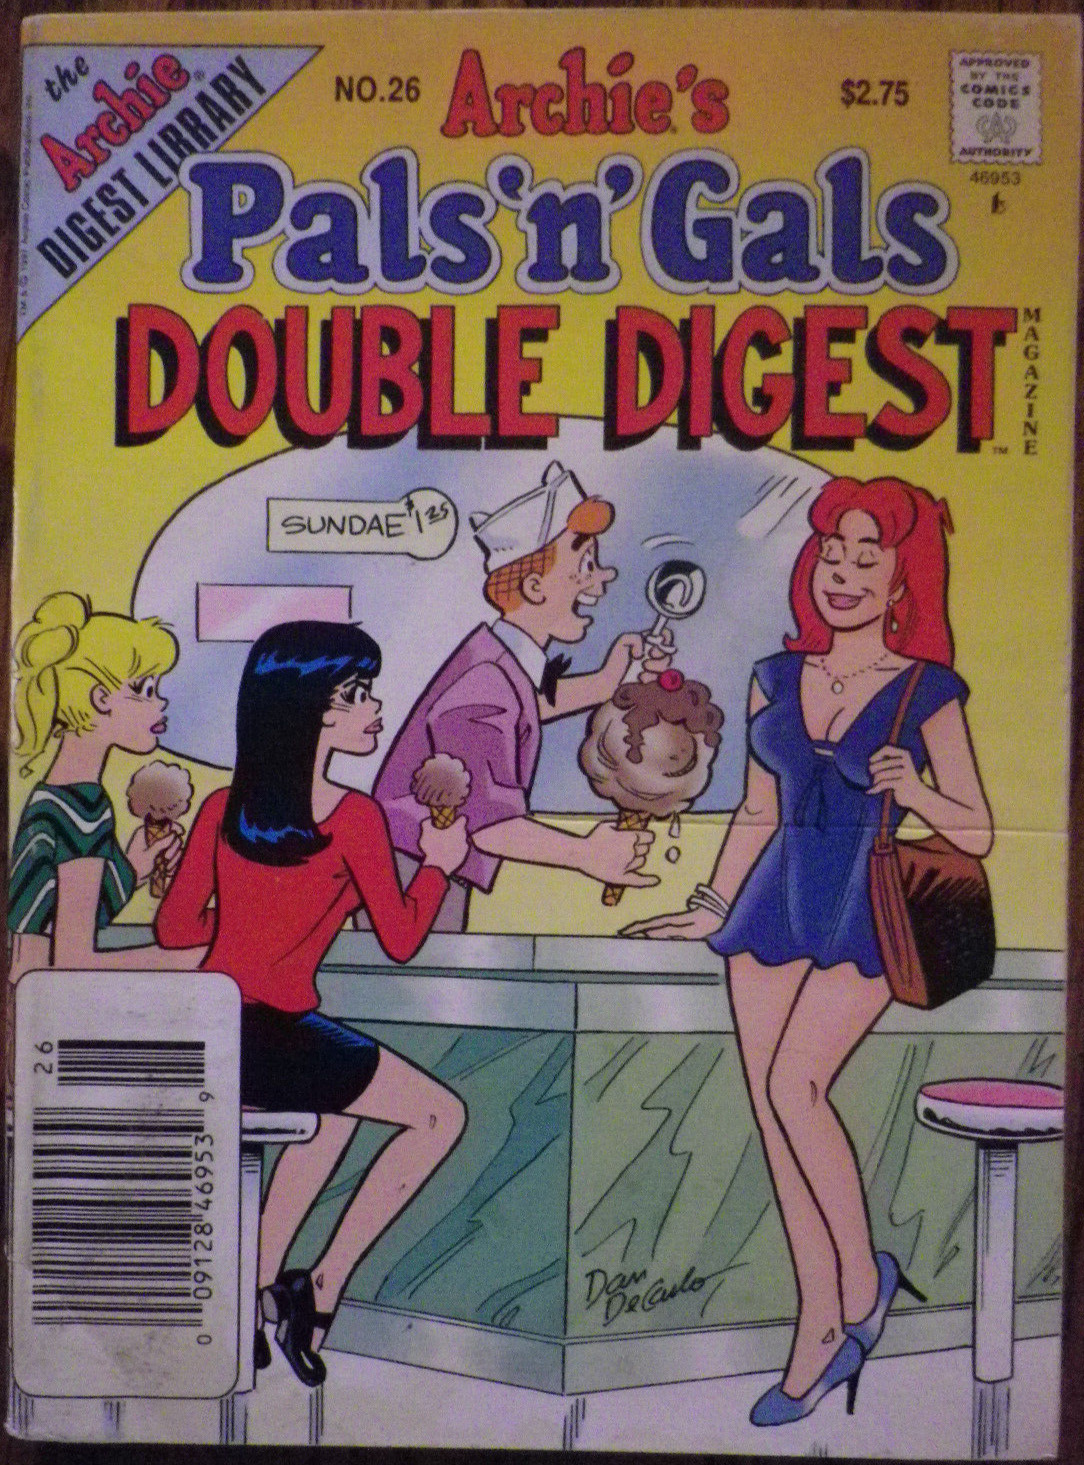 Archie\'s Pals N Gals Double Digest Magazine #26 - Jly 1997 - Archie Comics -LOOK